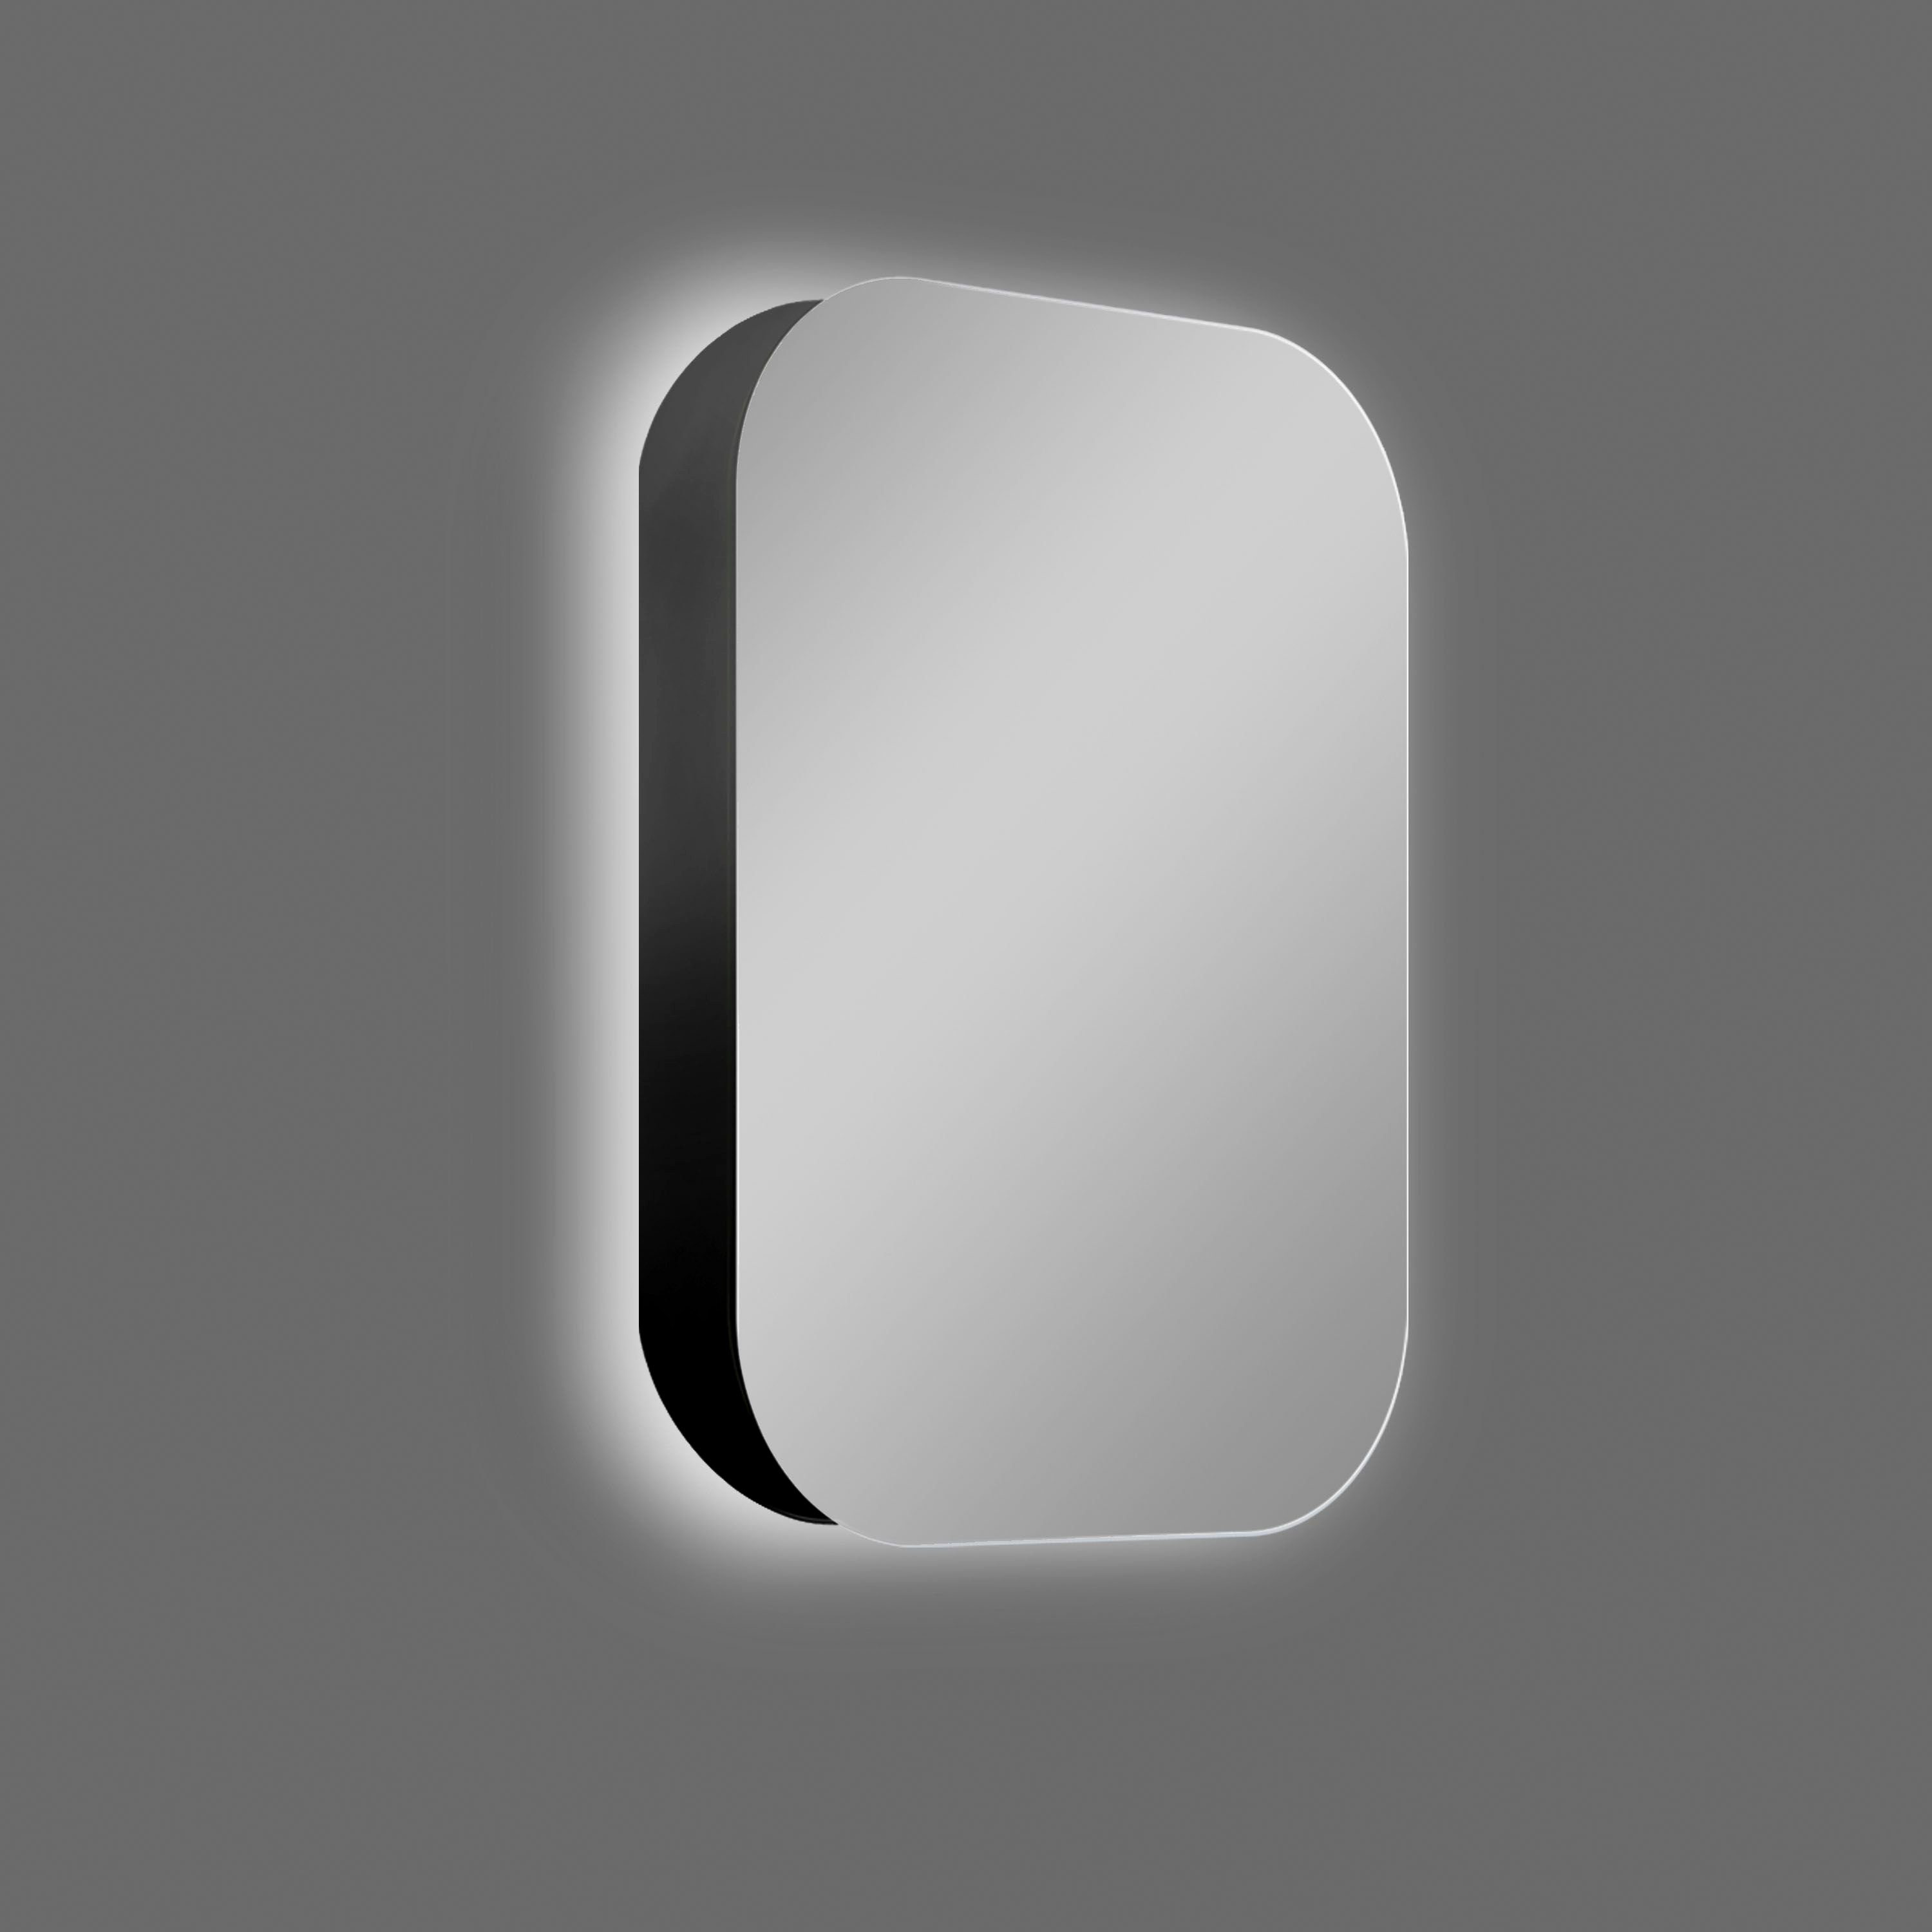 Talos Badezimmerspiegelschrank oval, BxH: 40x60 cm, aus Alumunium und Echtglas, IP24 | Spiegelschränke